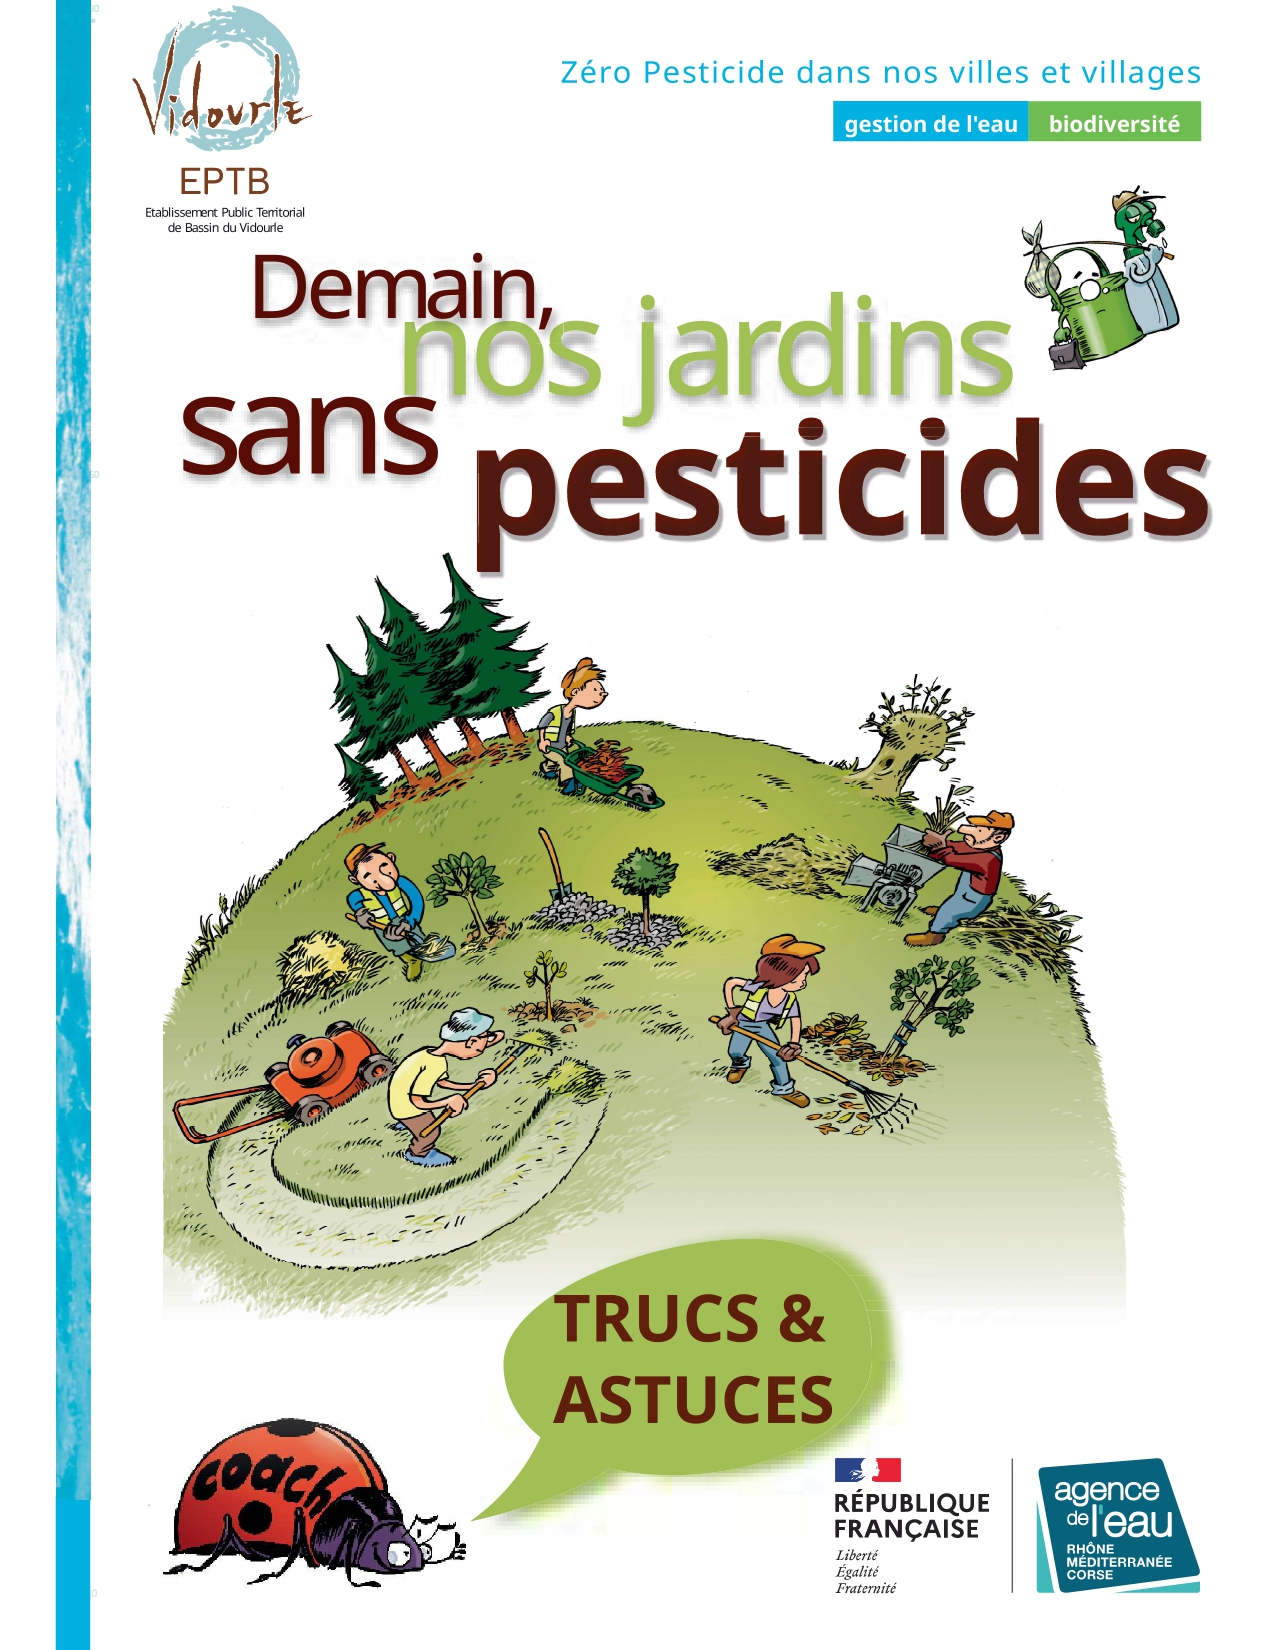 Demain nos jardins sans pesticides